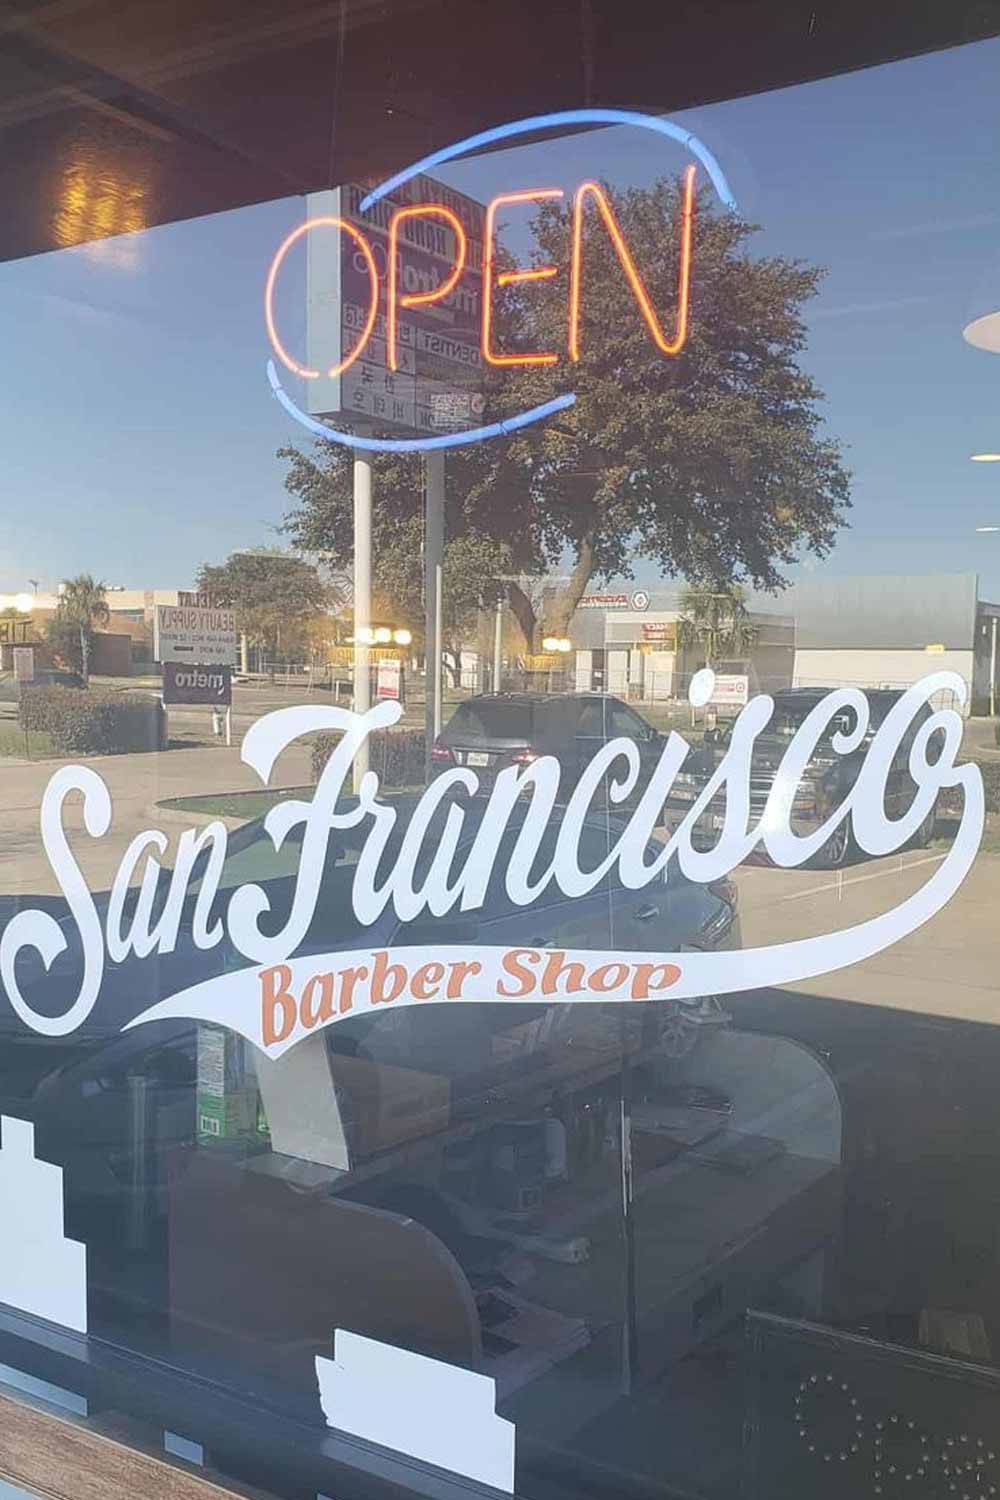 San Francisco Barbershop of Dallas 2